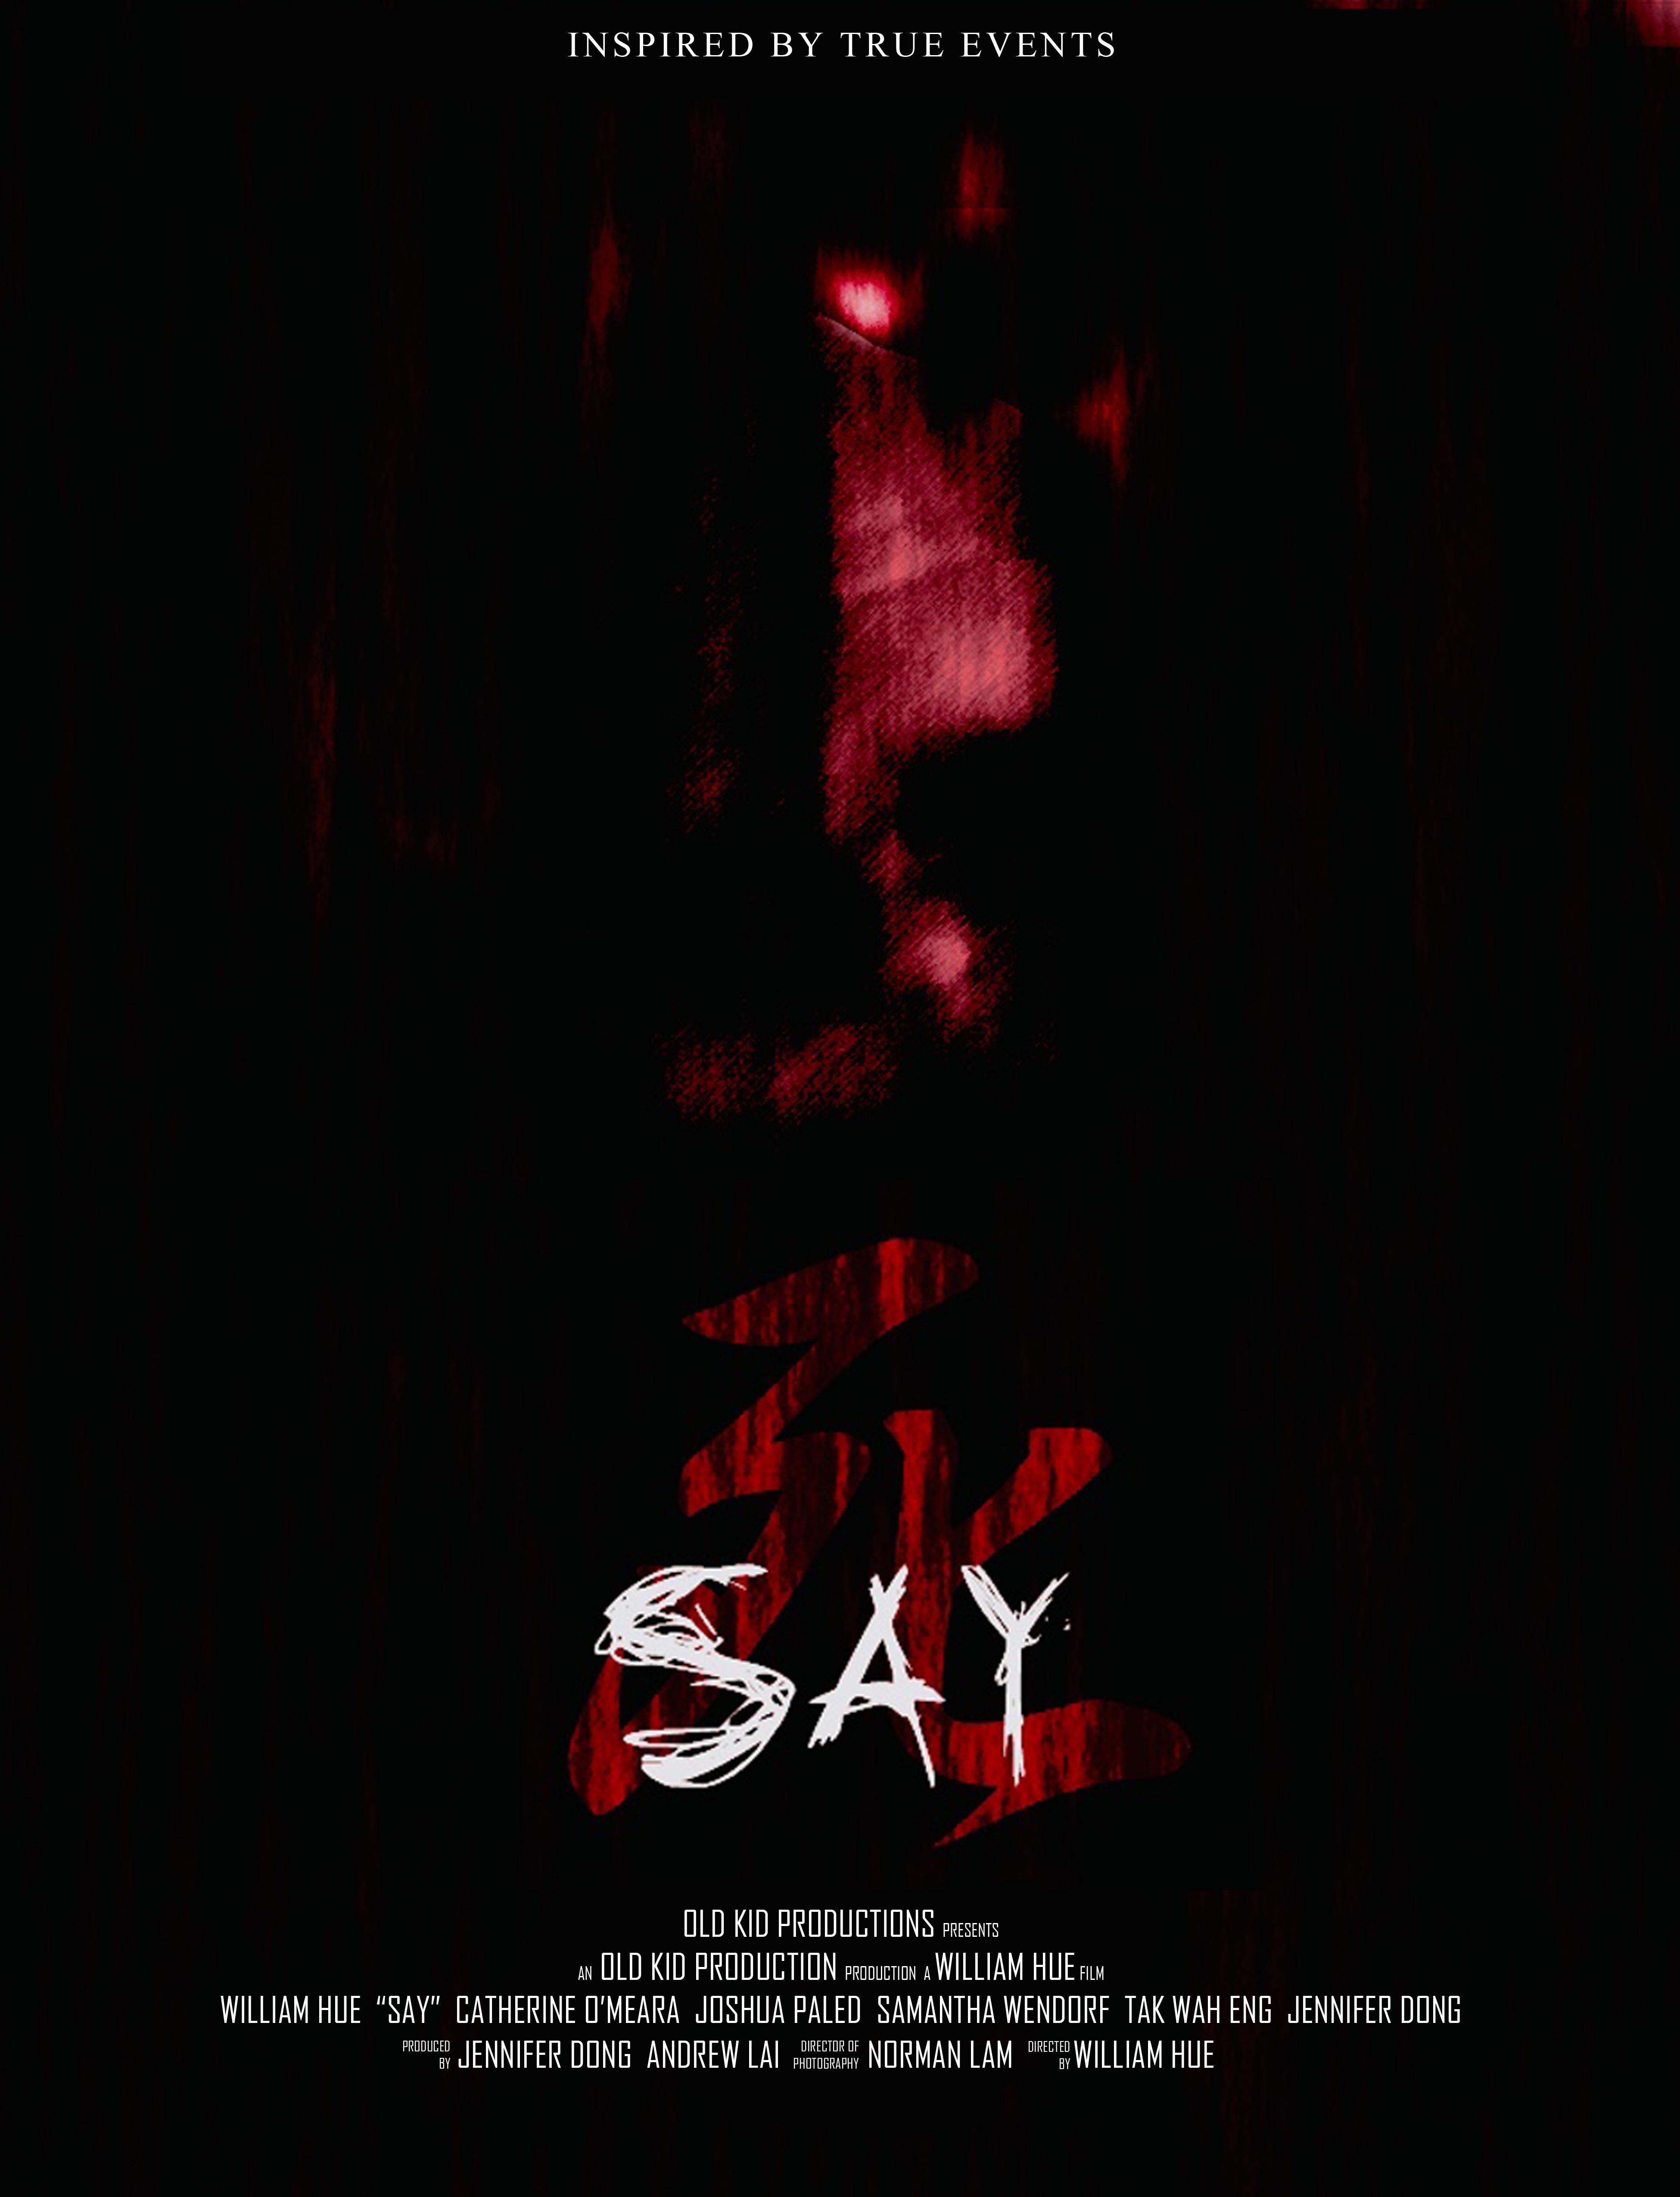 Say (2018)